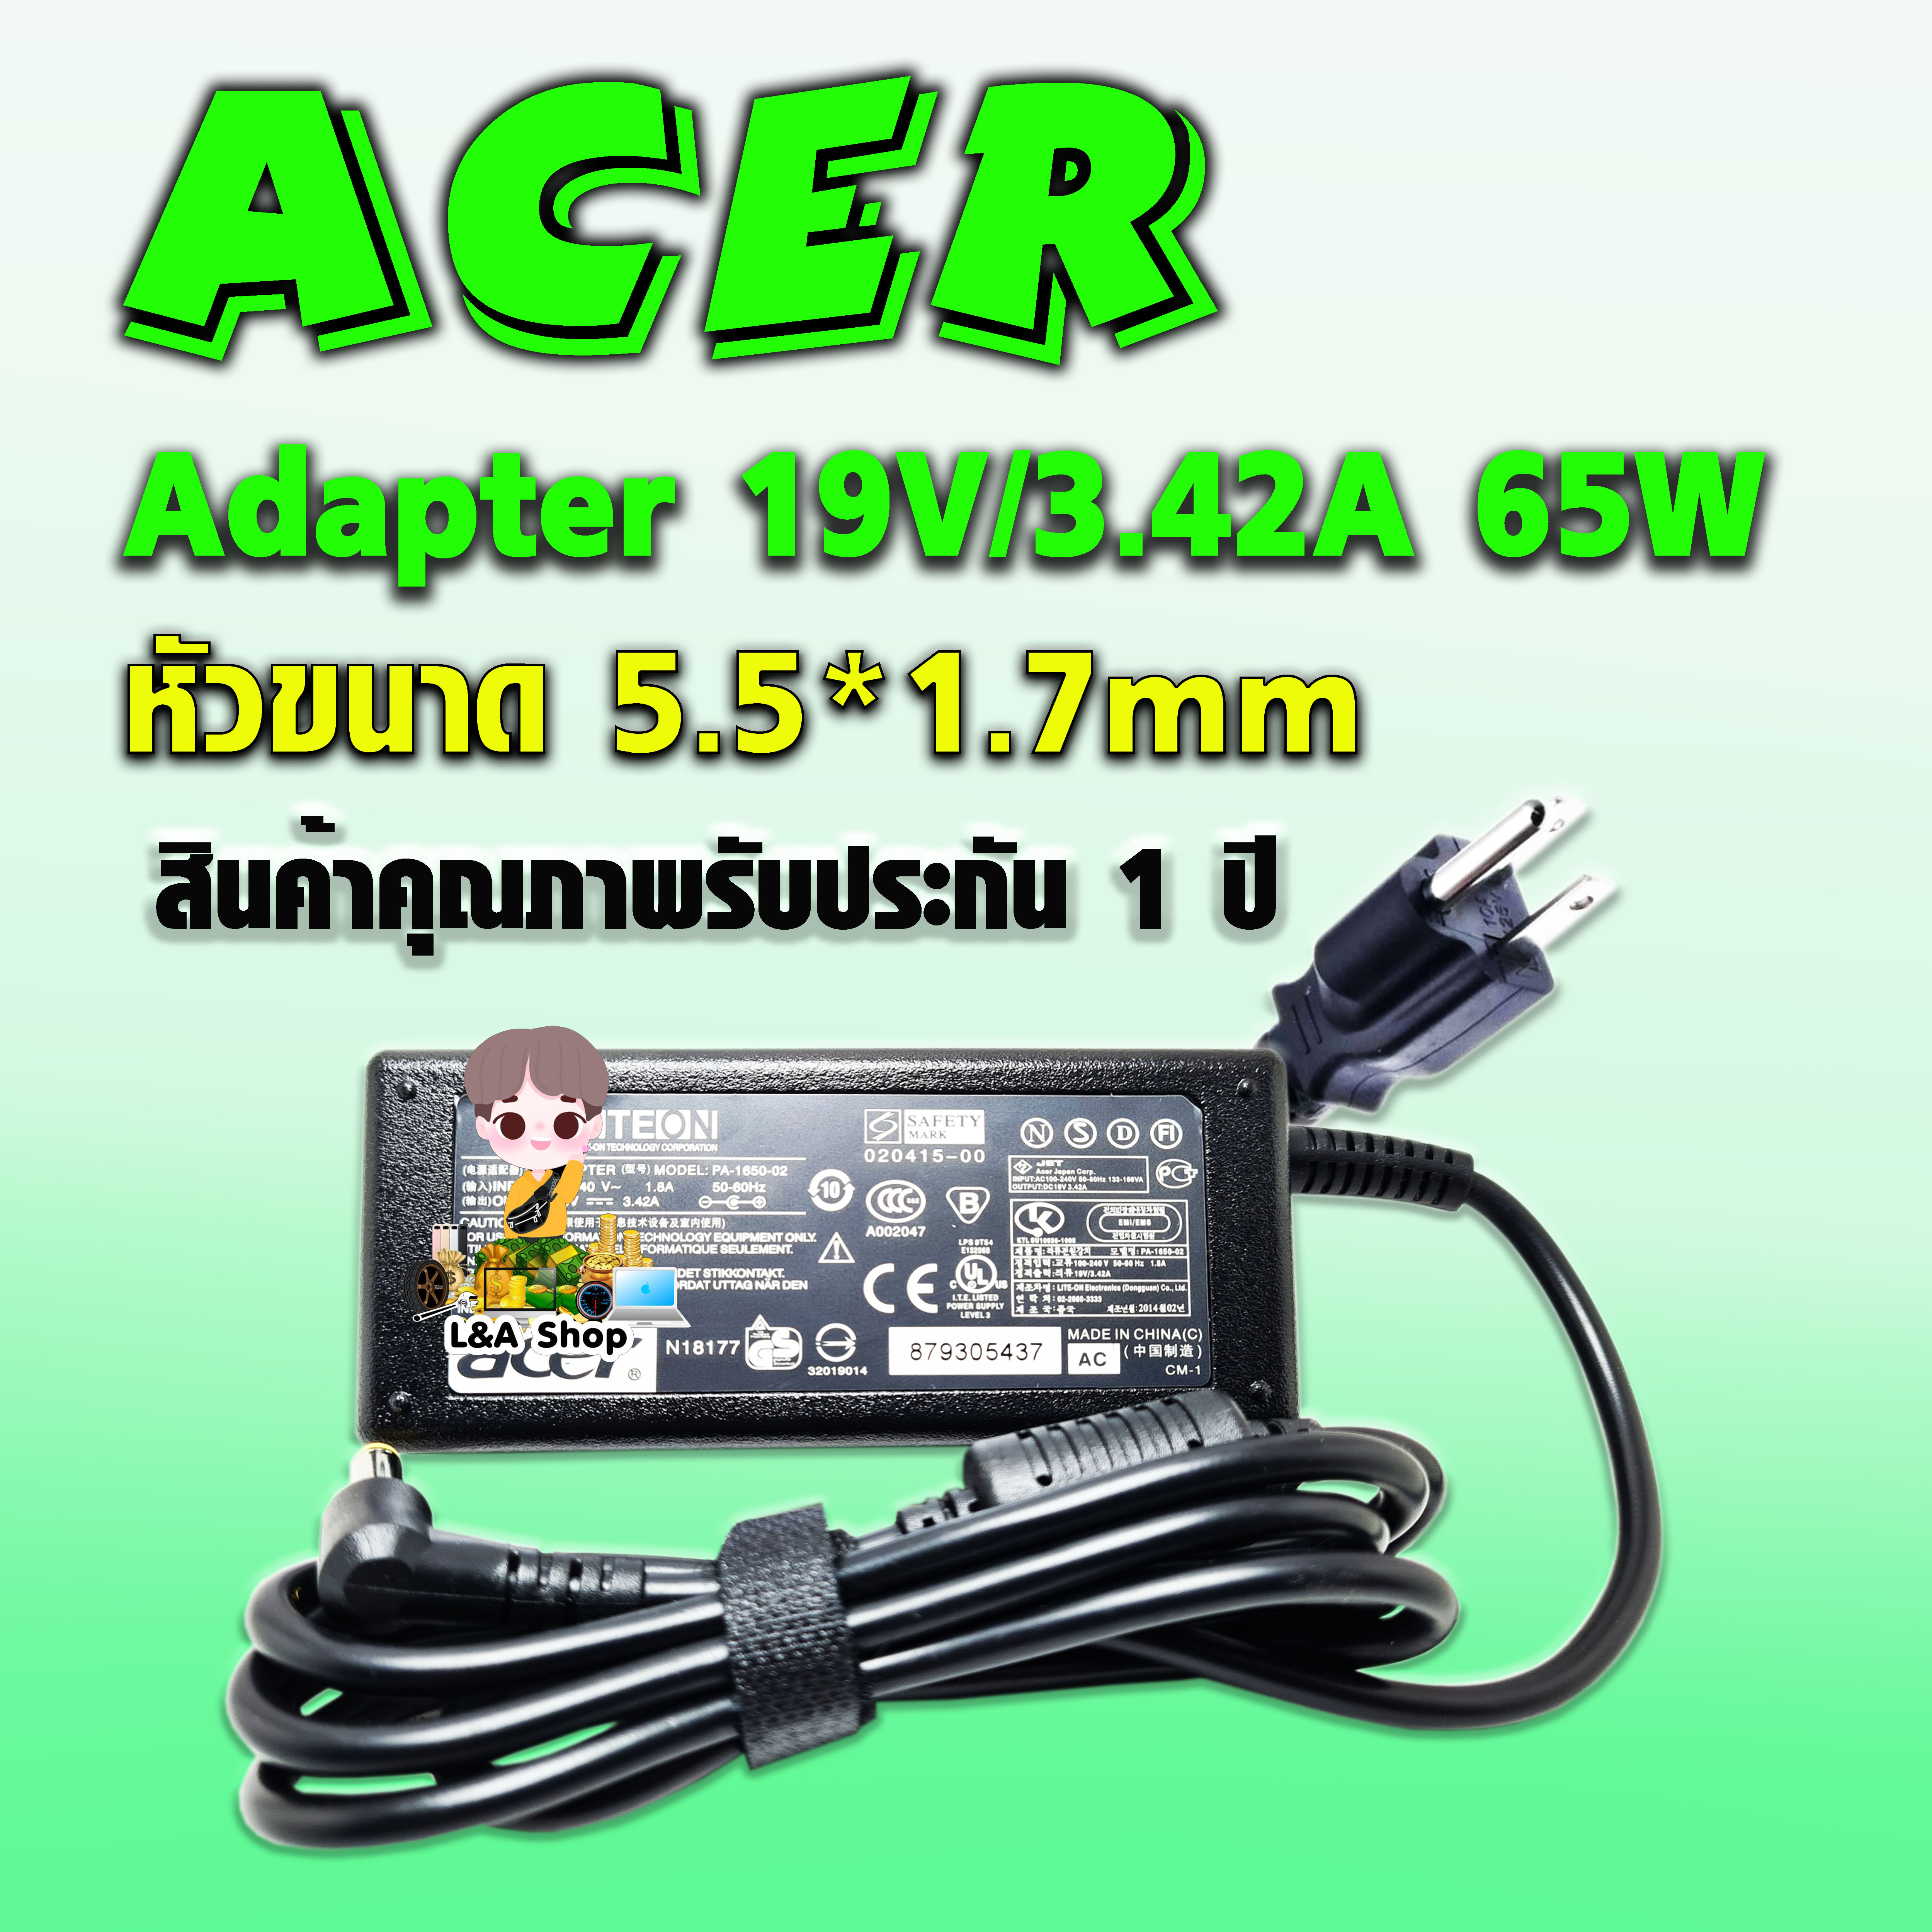 สายชาร์จ อแดปเตอร์ Acer Adapter  19V/3.42A 65W หัวขนาด 5.5*1.7mm สินค้าคุณภาพ พร้อมรับประกัน 1 ปีเลยจ้า